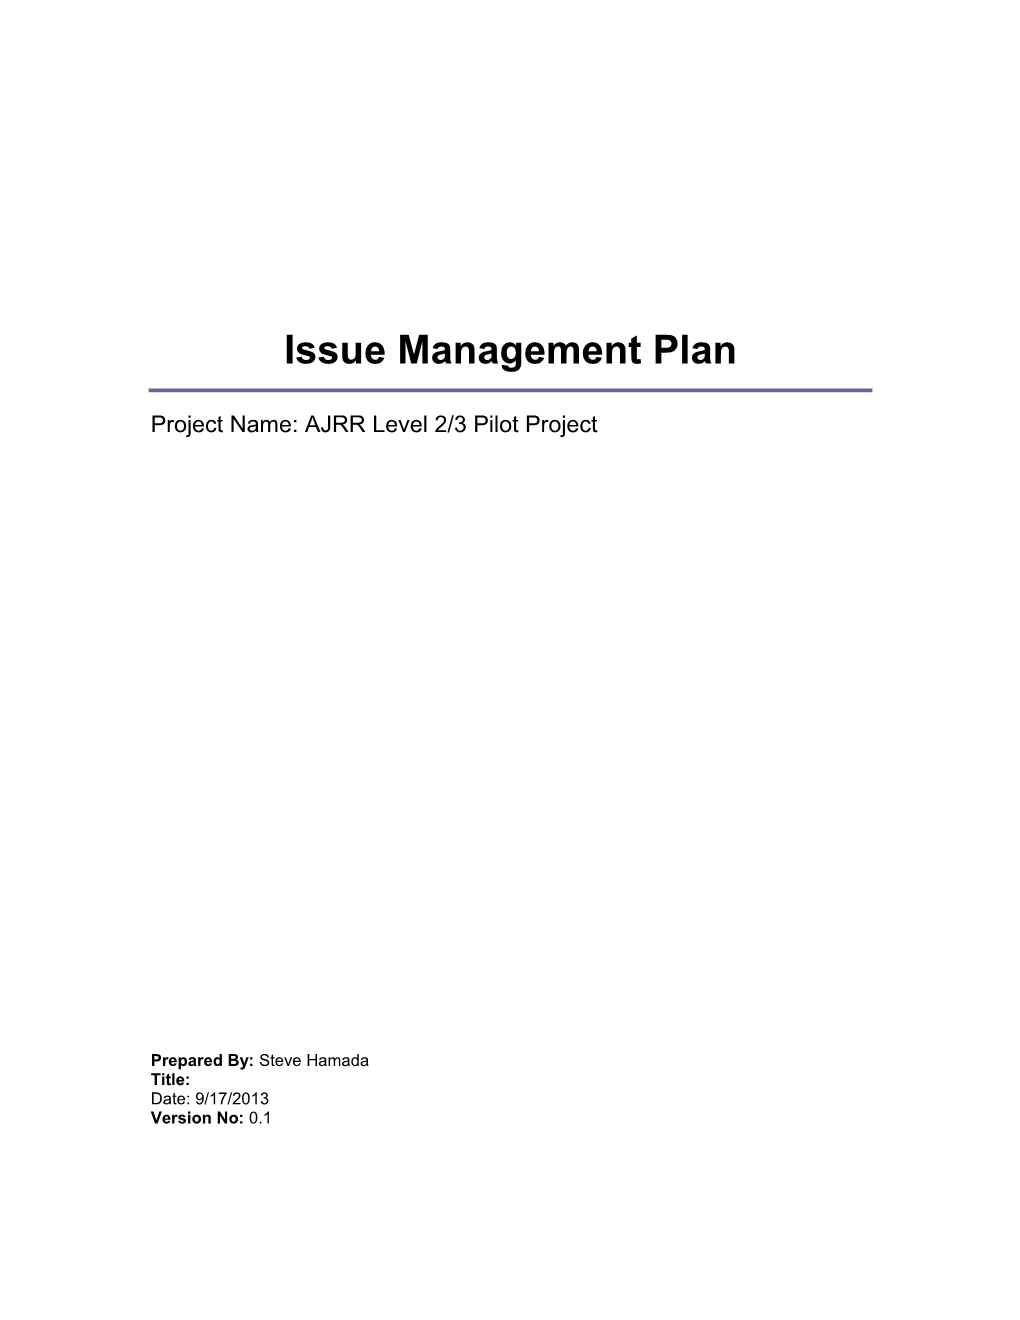 AJRR Level 2/3 Pilot Project Change Management Plan